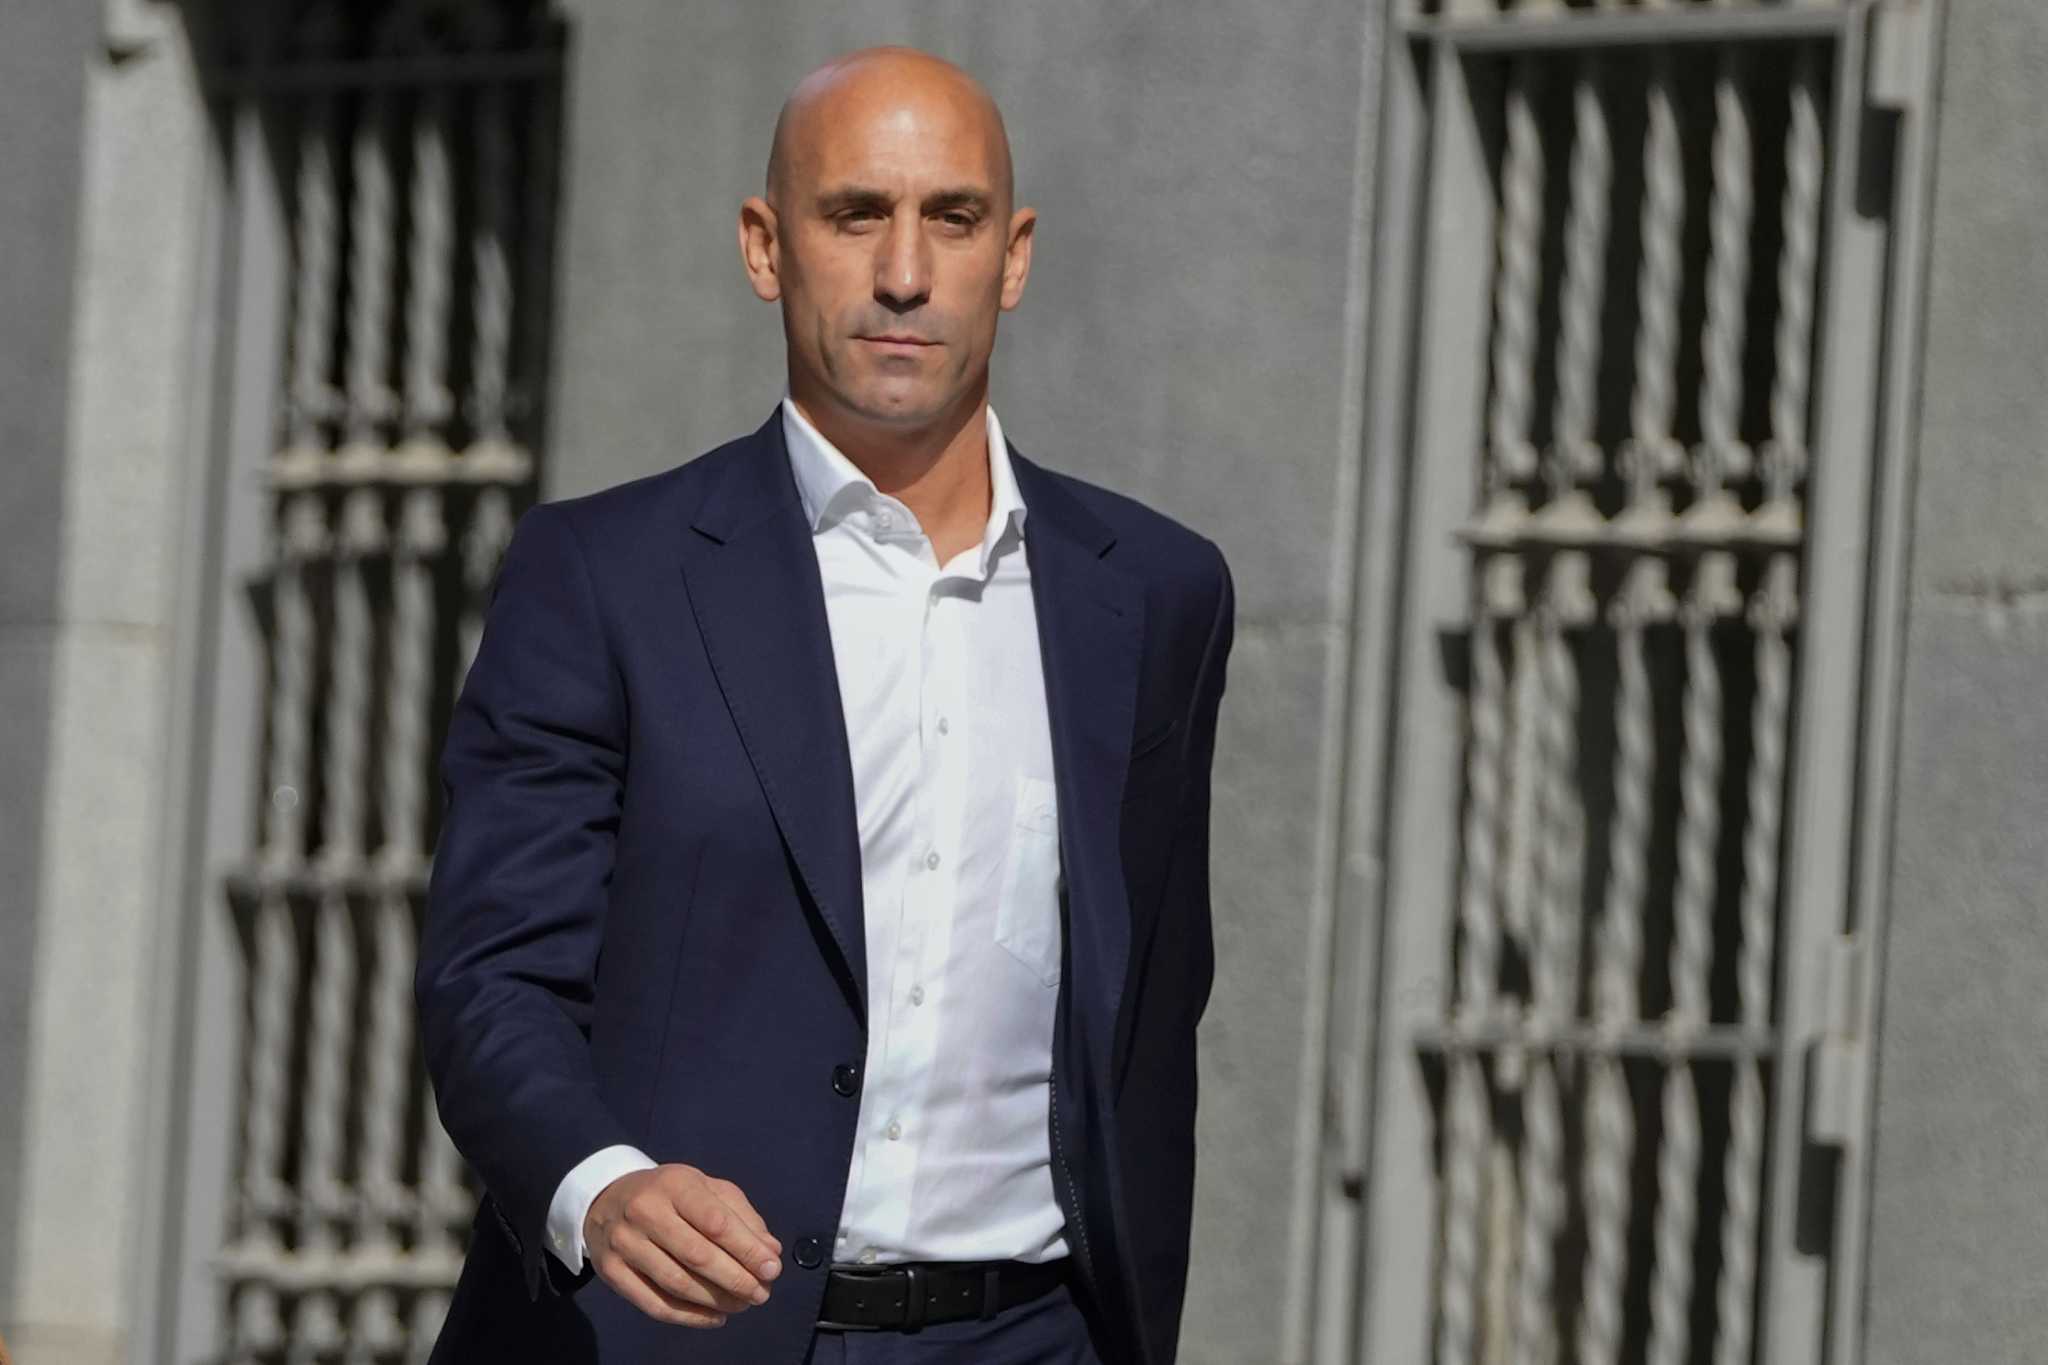 La policía española arrestó al ex presidente de la Federación de Fútbol Rubiales a su regreso al país en medio de investigaciones de corrupción.